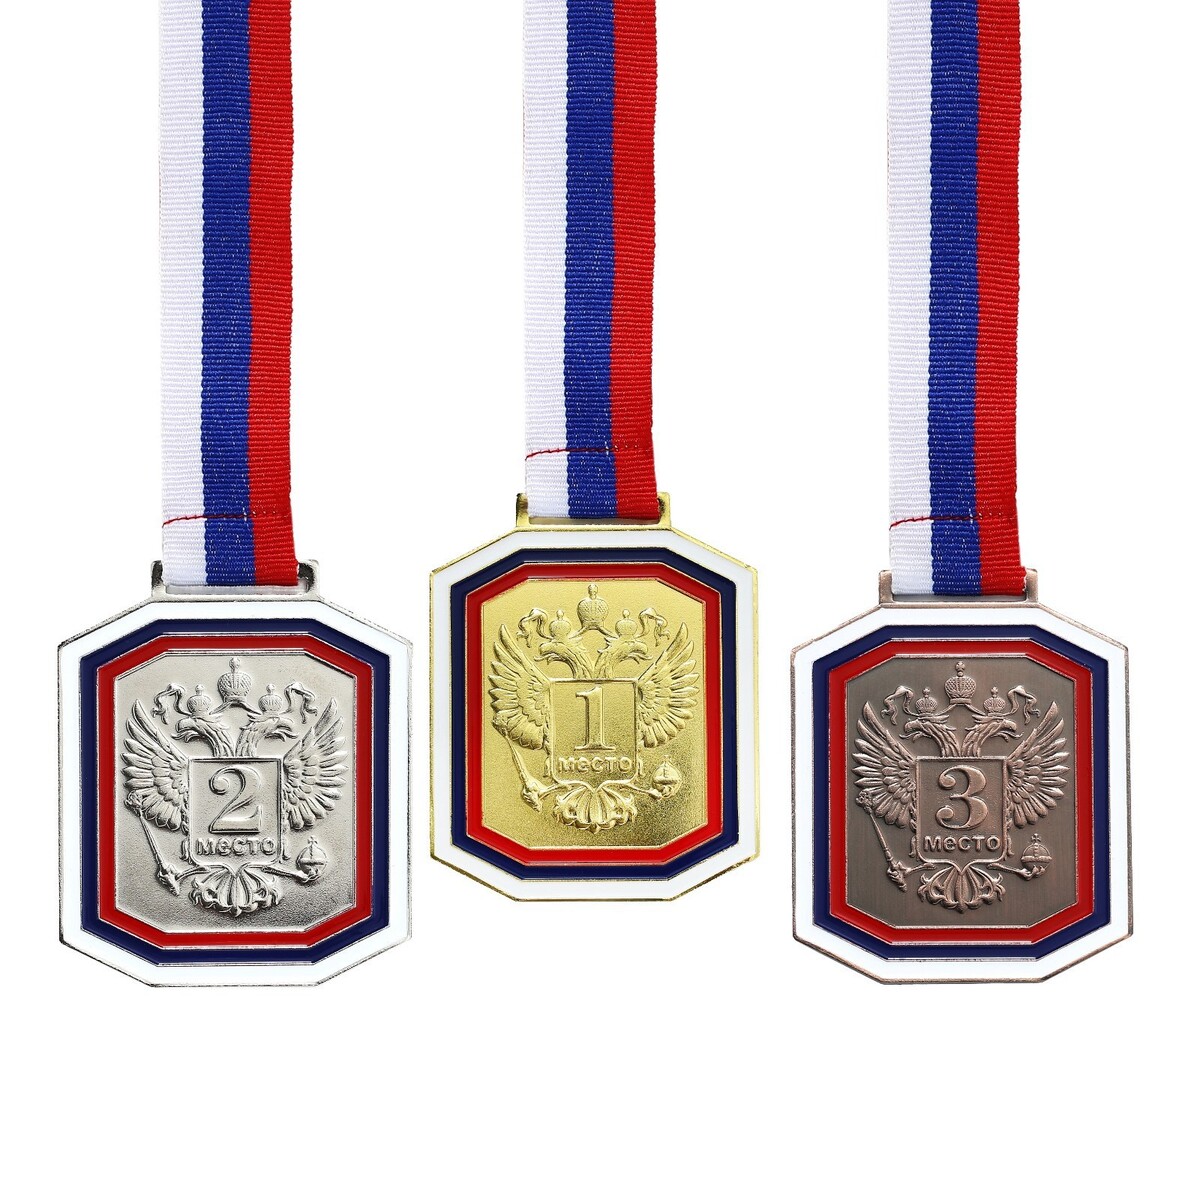 Медаль под нанесение 002, триколор. цвет бронз. с лентой. 6 х 7 см медаль под нанесение 067 диам 5 см триколор бронз с лентой